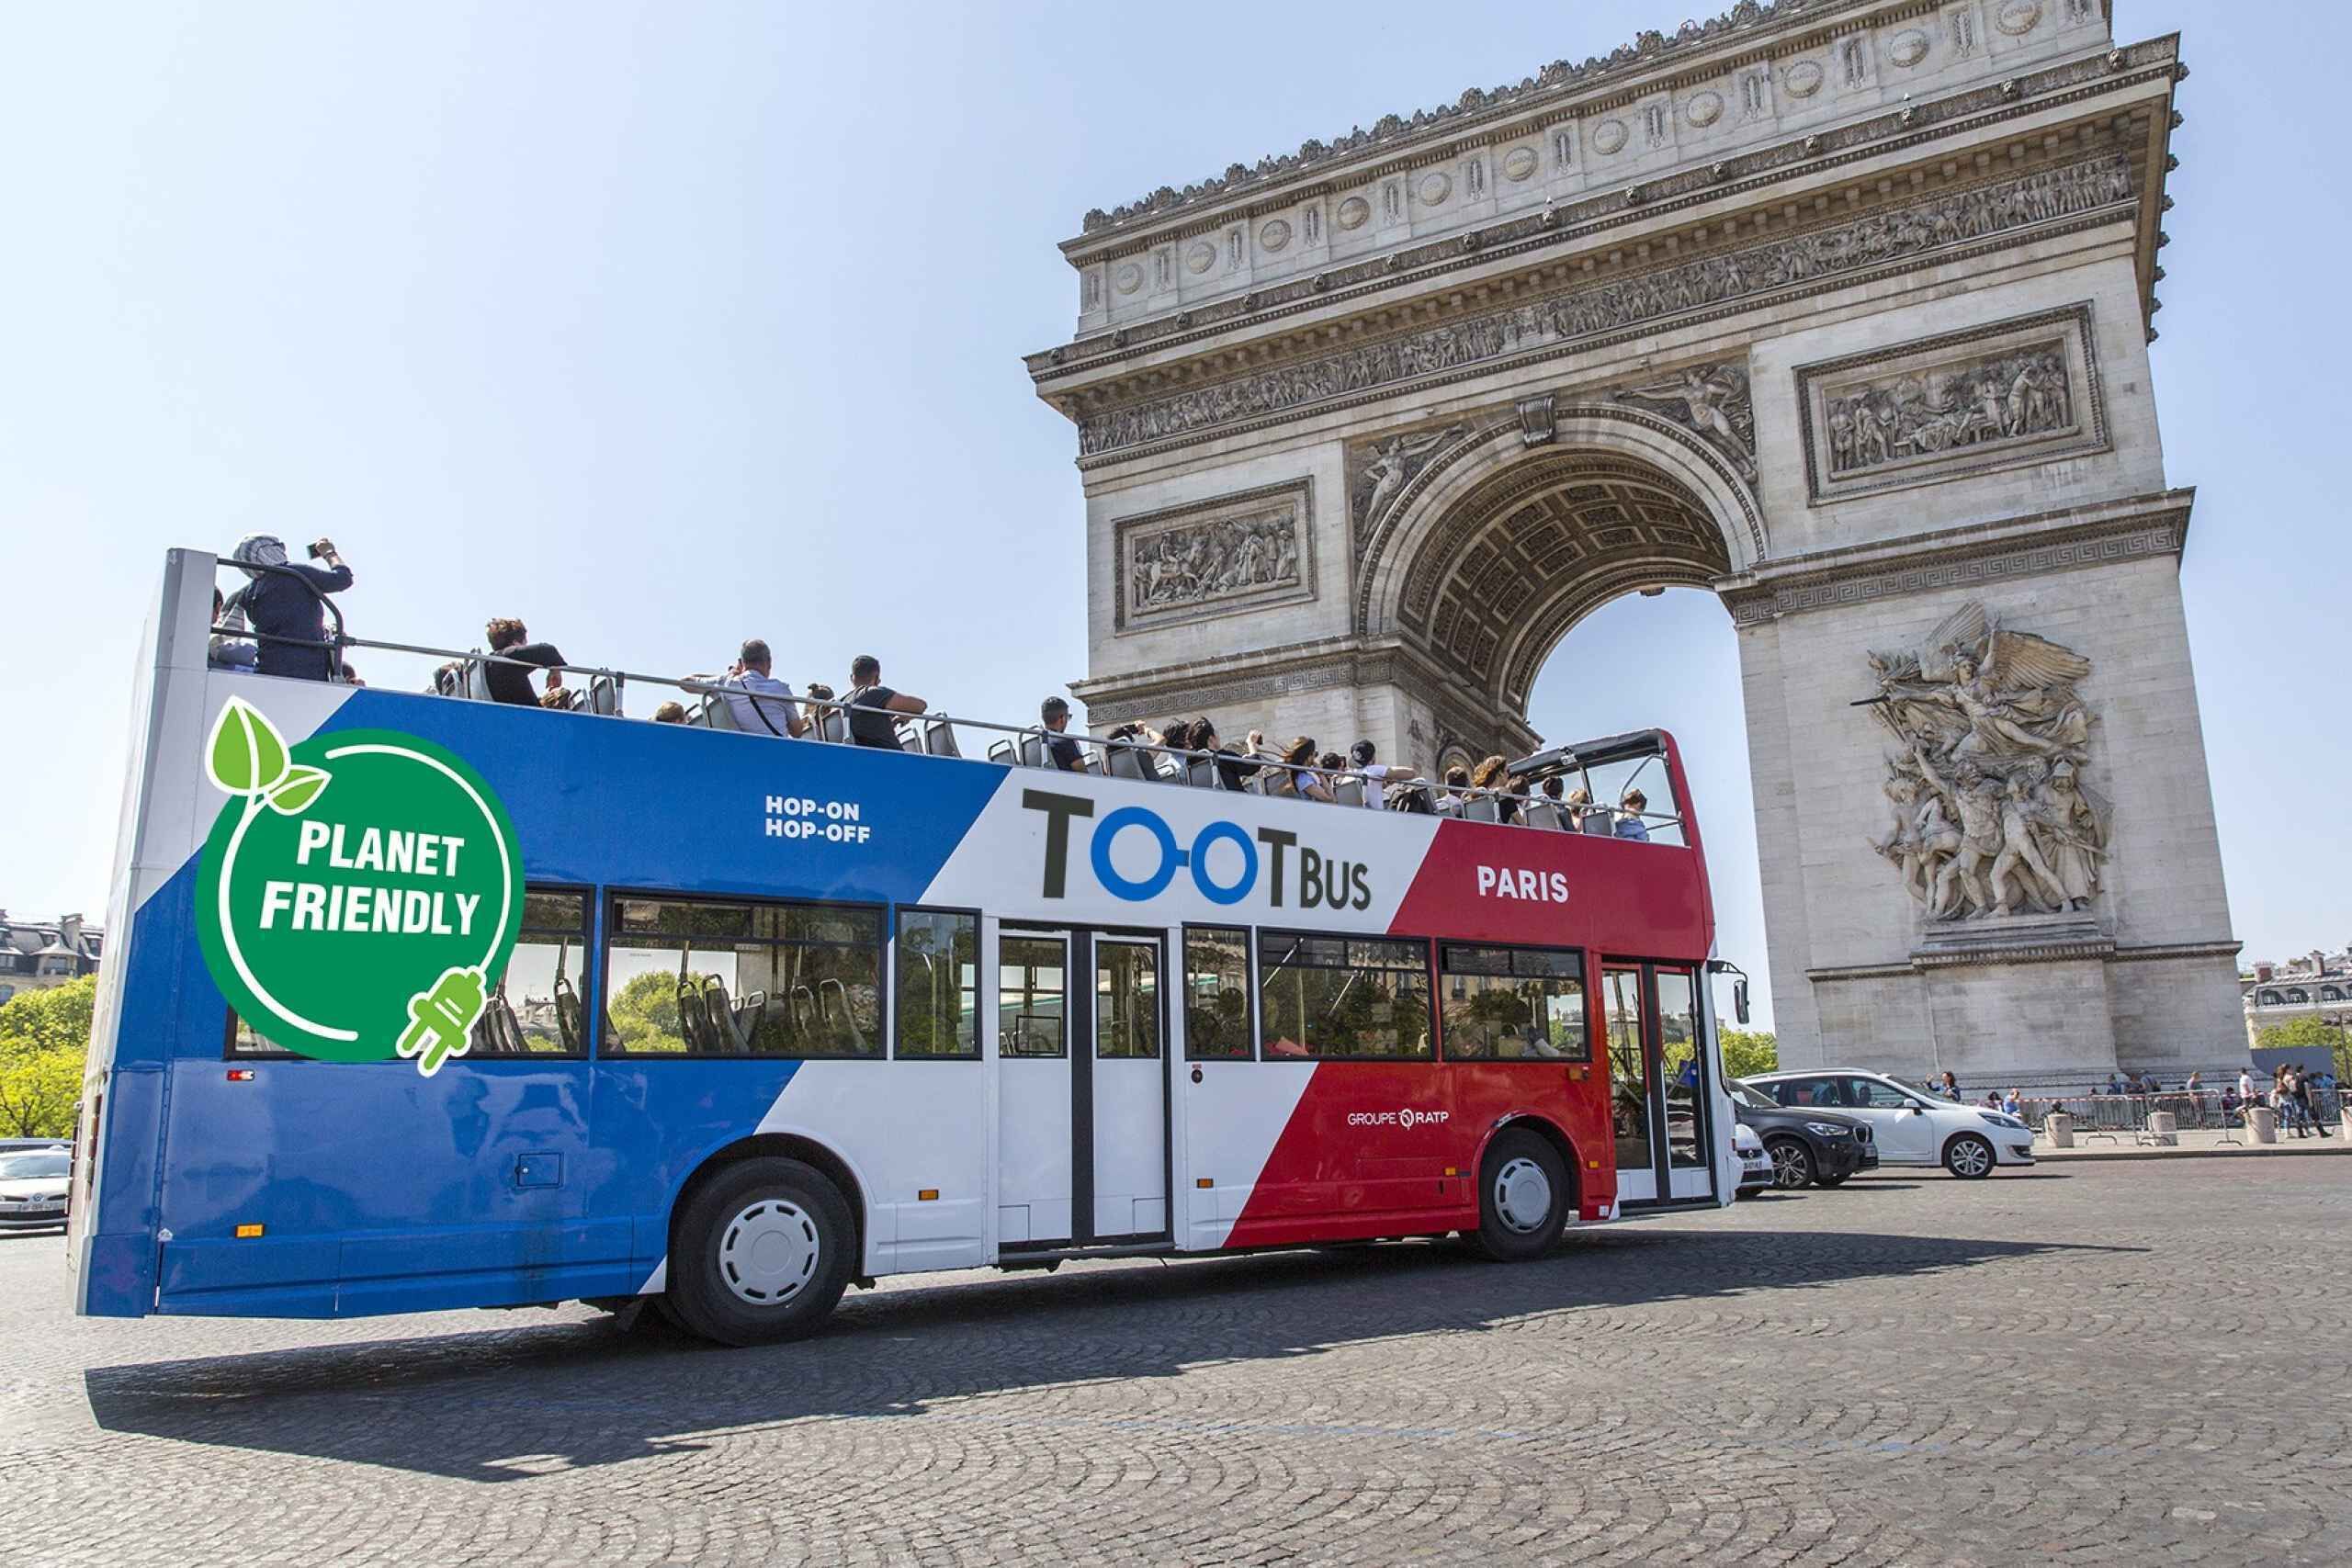 Paris Tootbus Hopon Hopoff Discovery Bus Tour